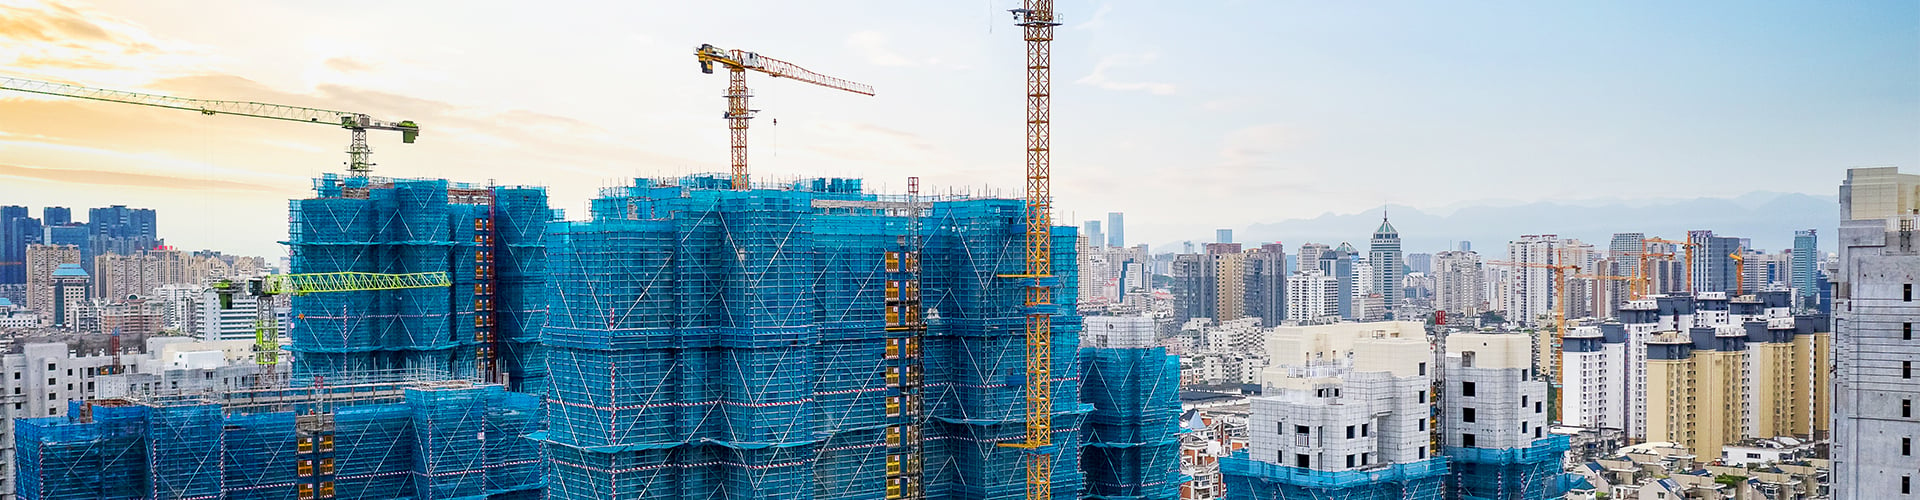 Cranes constructing skyscrapers